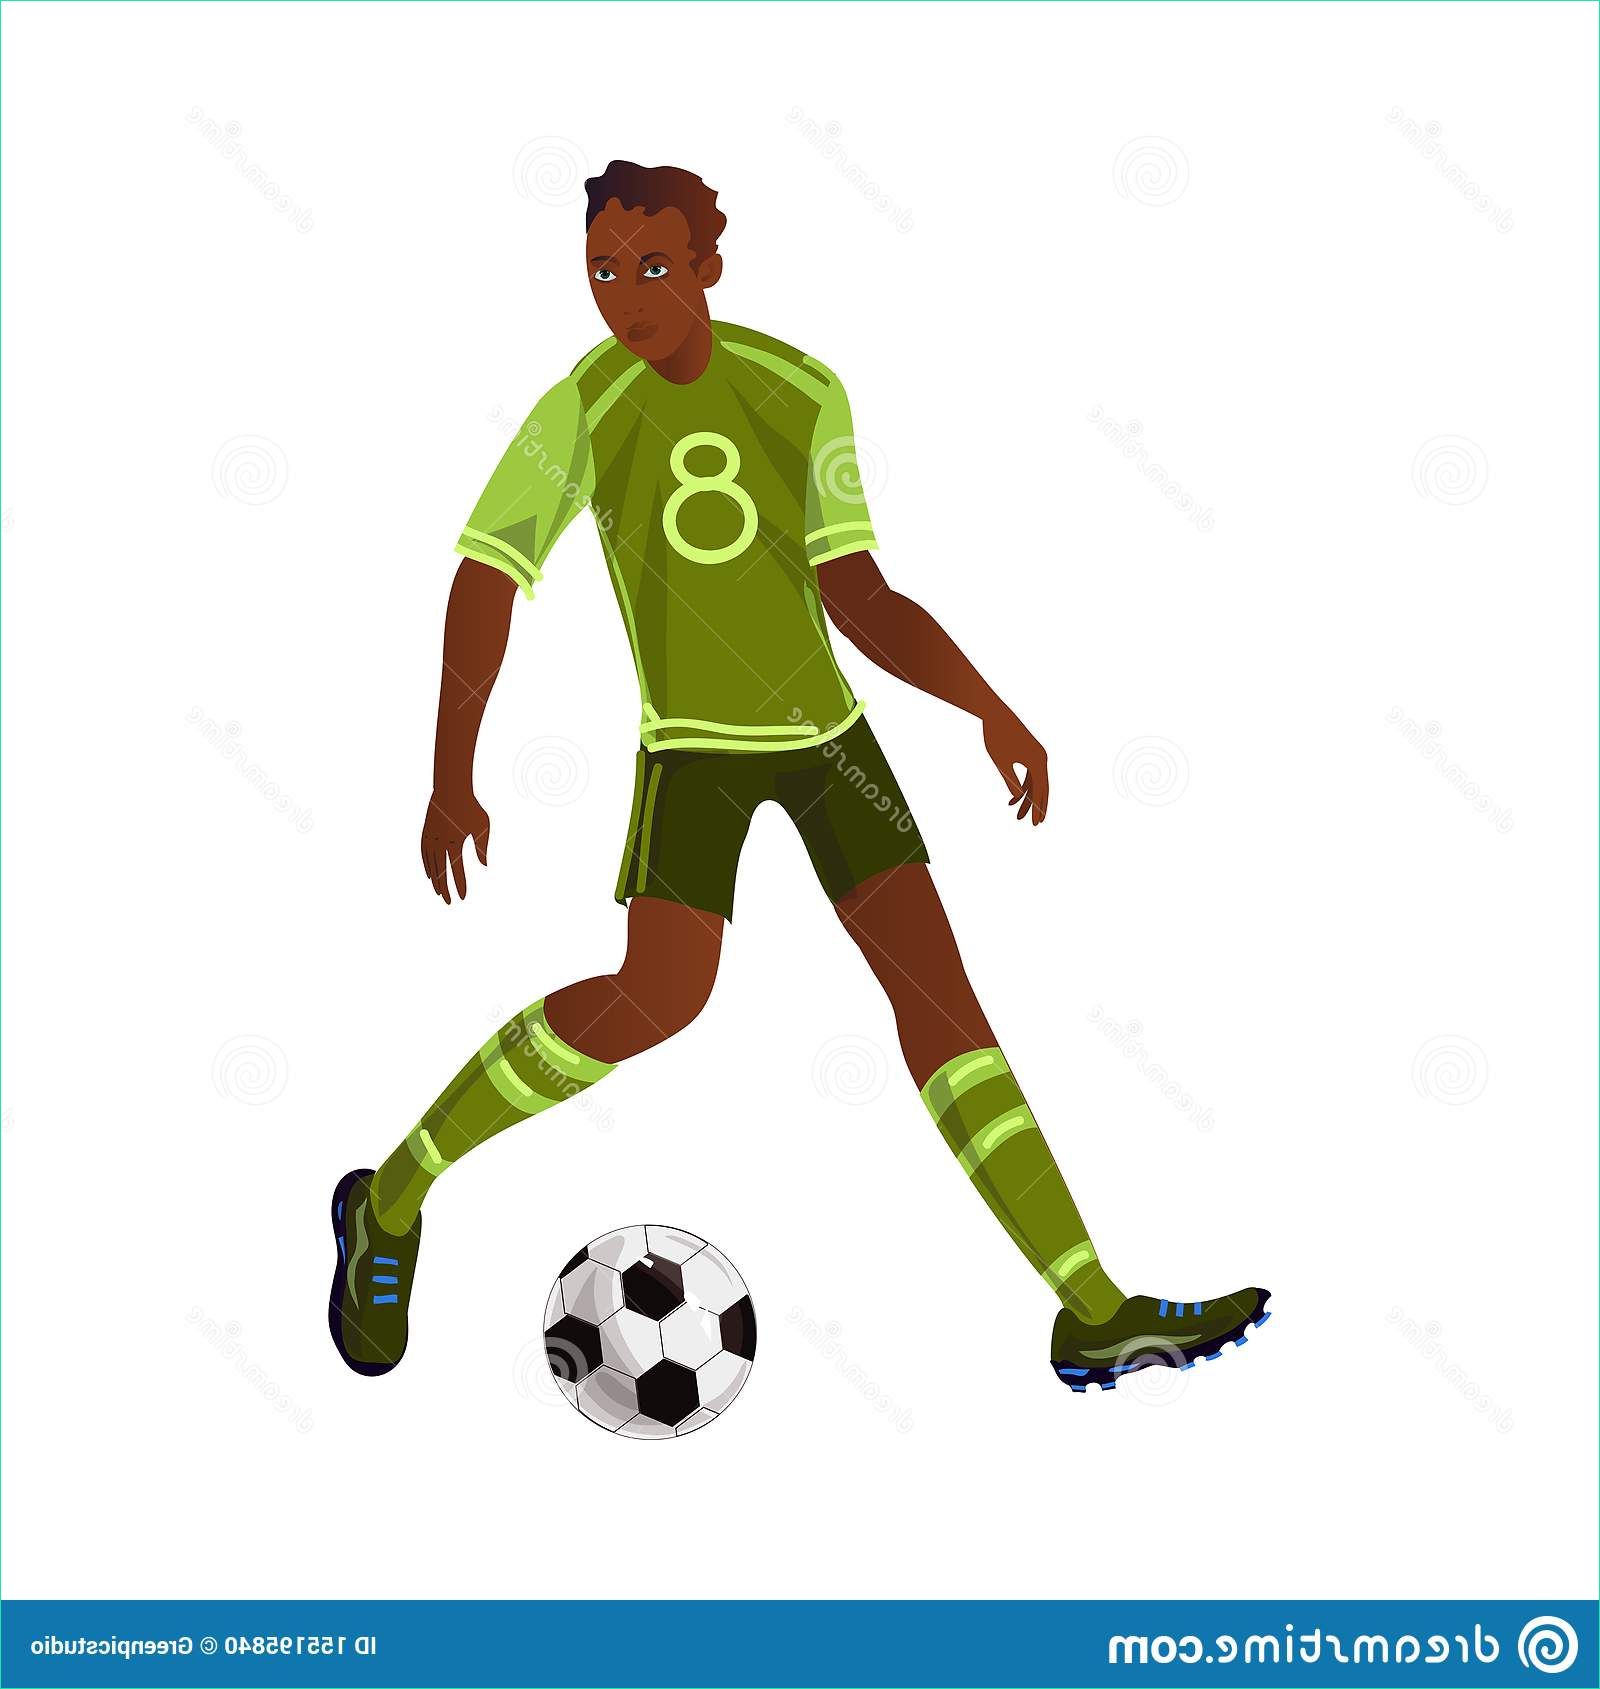 Dessin Footballeur Beau Images Footballeur De Dessin Anim Stock Illustrations Vecteurs